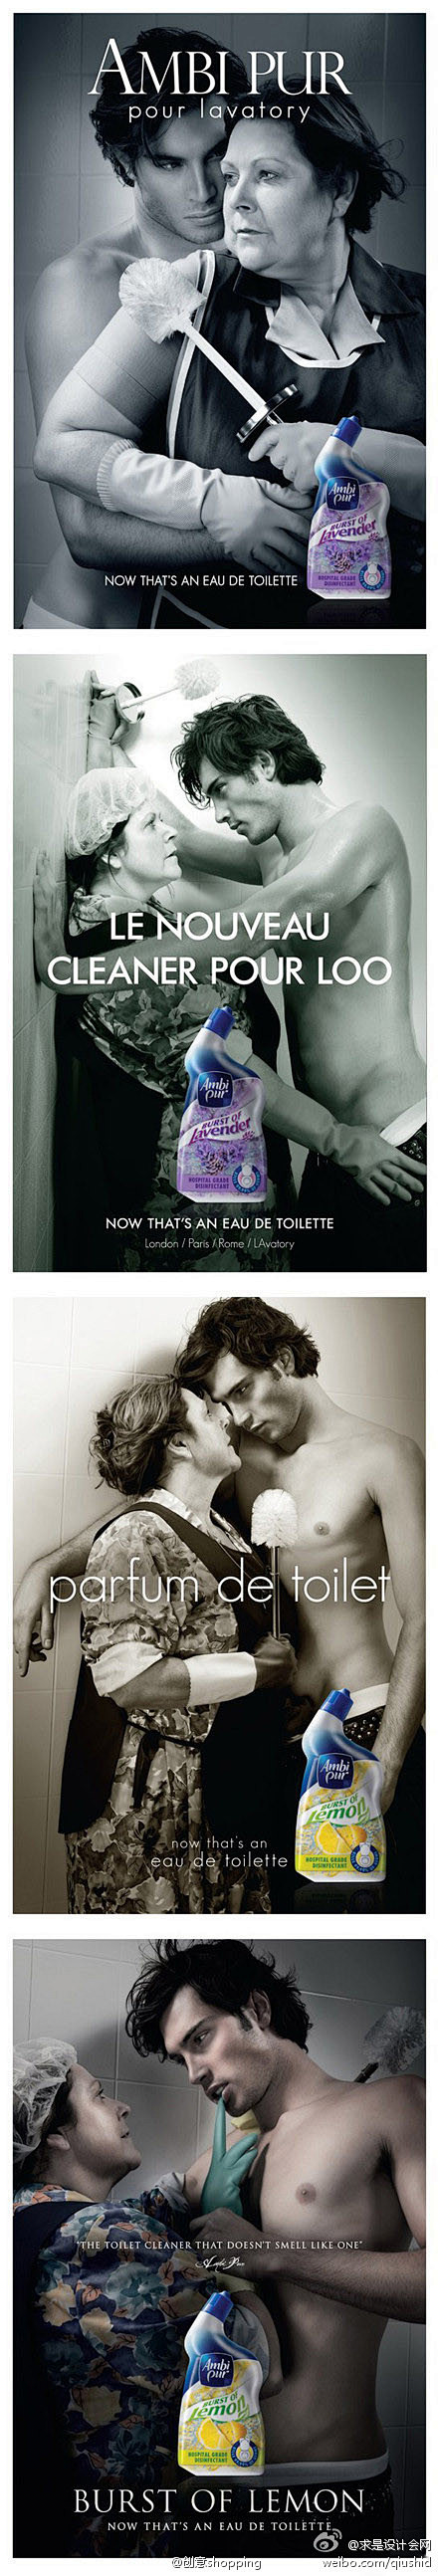 求是设计会网
浴厕清洁剂创意广告：“现在...